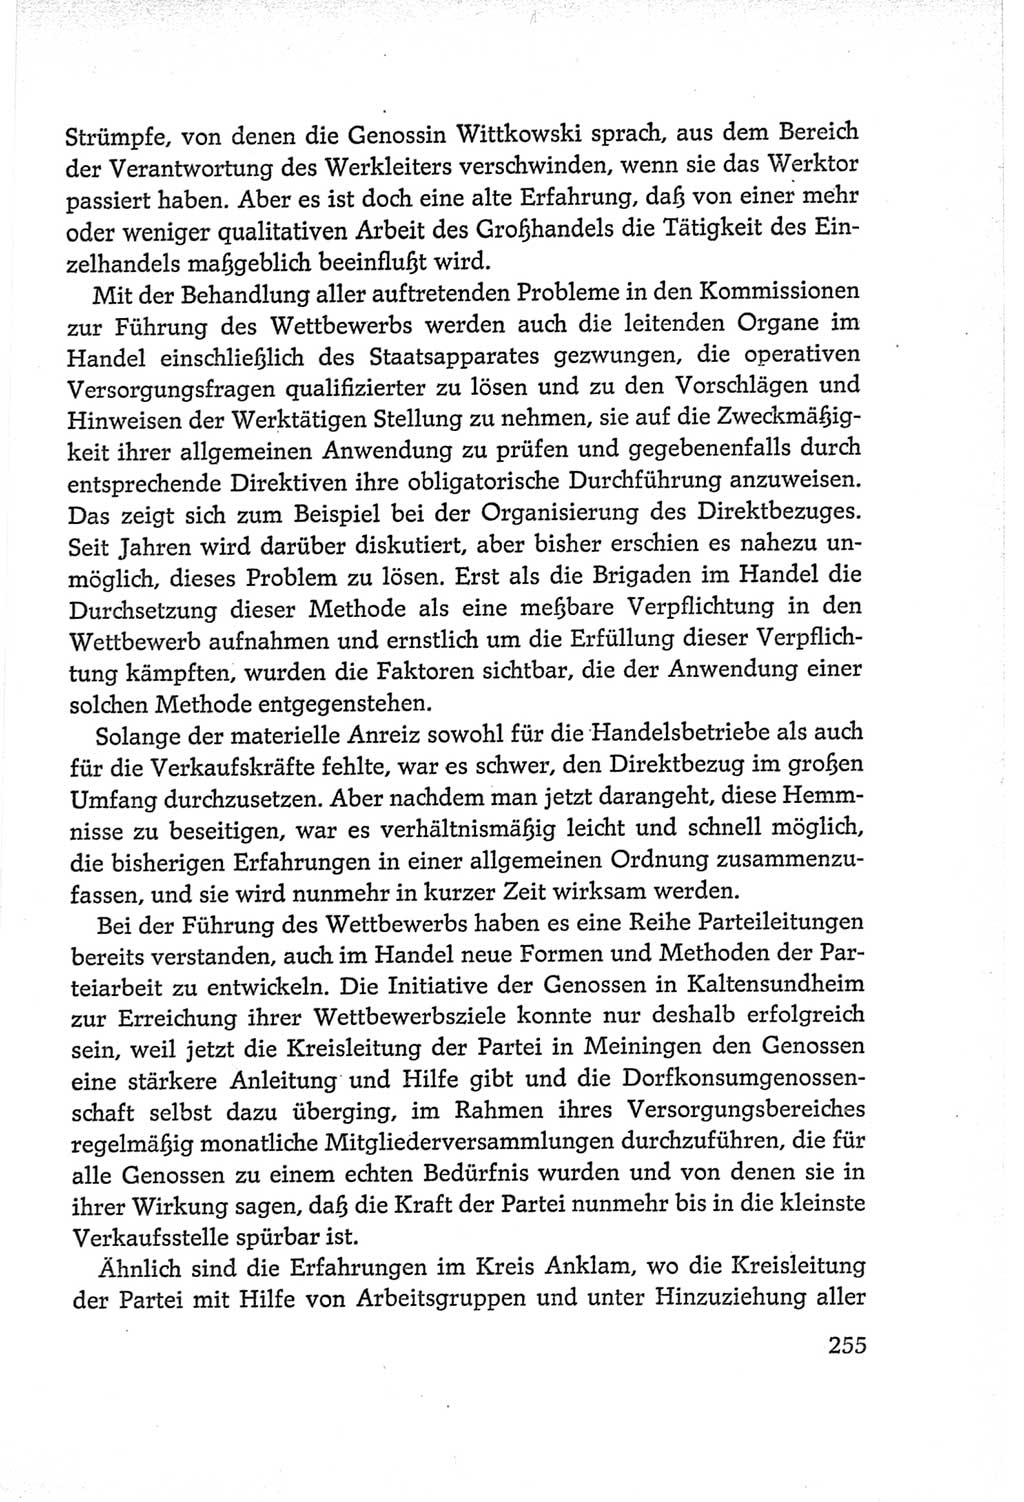 Protokoll der Verhandlungen des Ⅵ. Parteitages der Sozialistischen Einheitspartei Deutschlands (SED) [Deutsche Demokratische Republik (DDR)] 1963, Band Ⅱ, Seite 255 (Prot. Verh. Ⅵ. PT SED DDR 1963, Bd. Ⅱ, S. 255)